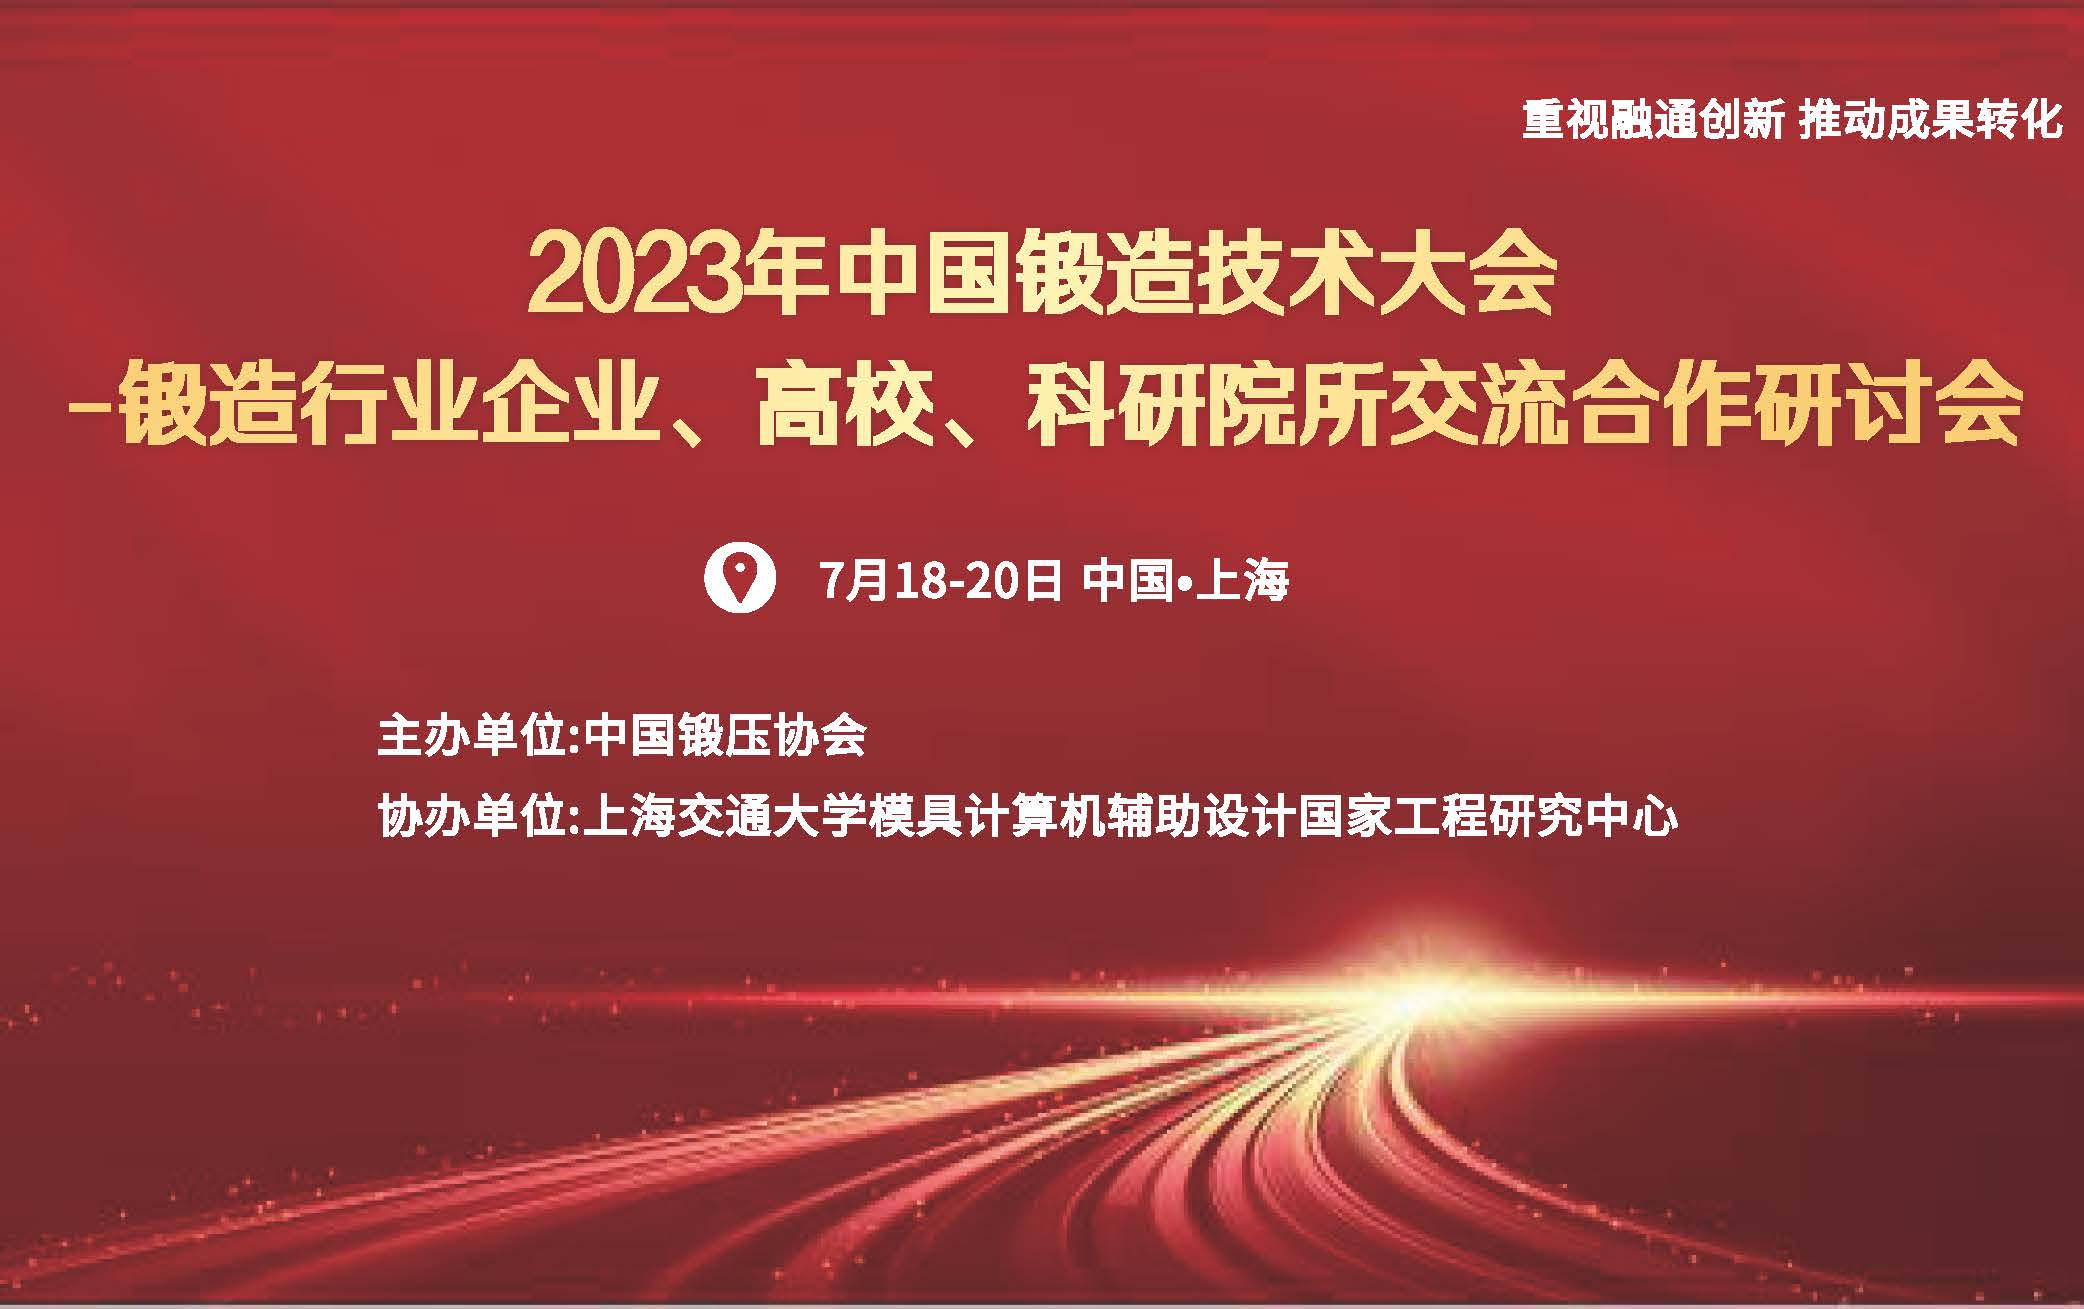 召开2023年中国锻造技术大会的通知